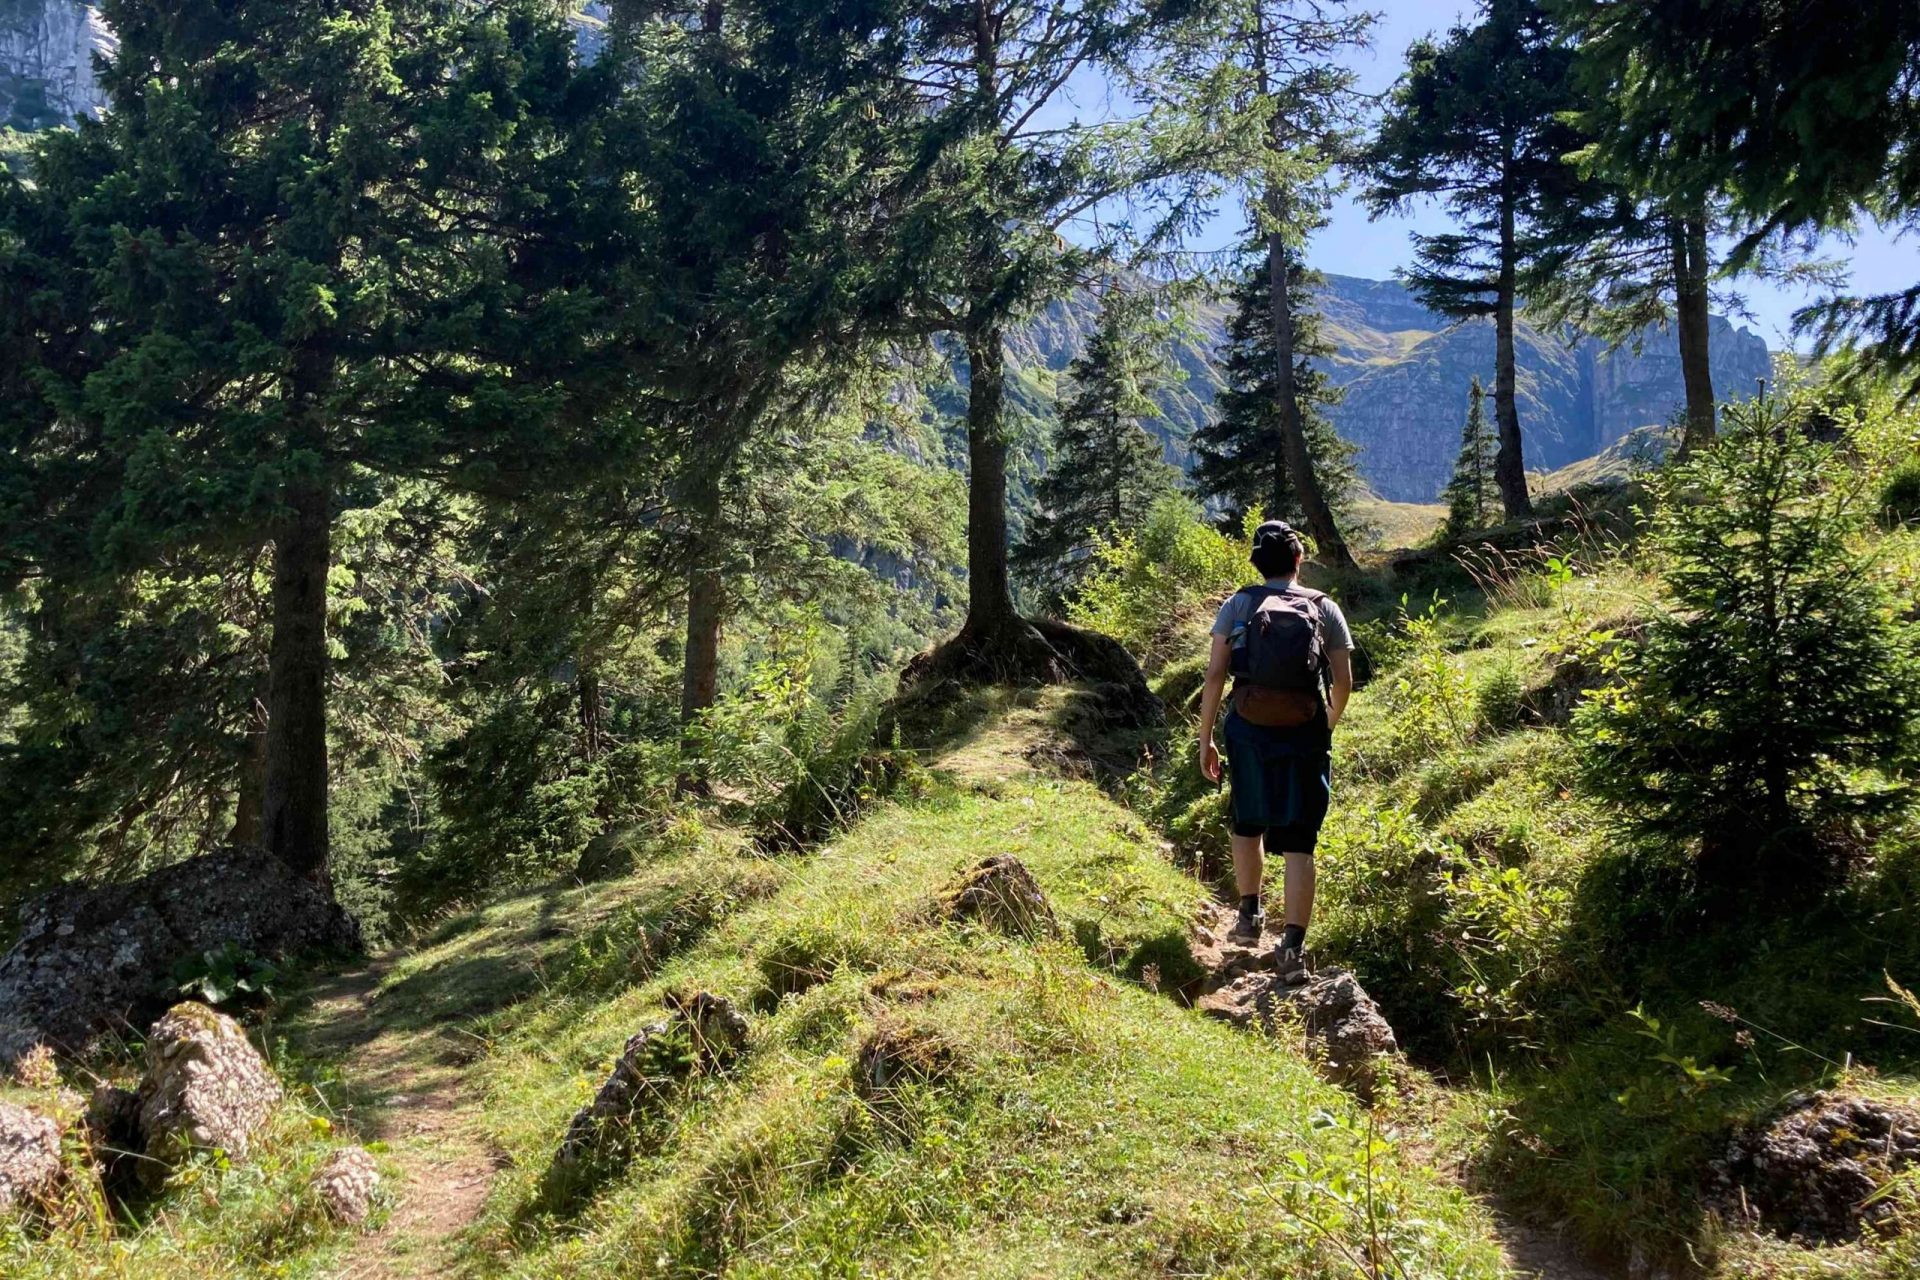 una persona camina por una cornisa rocosa en medio de un bosque montañoso